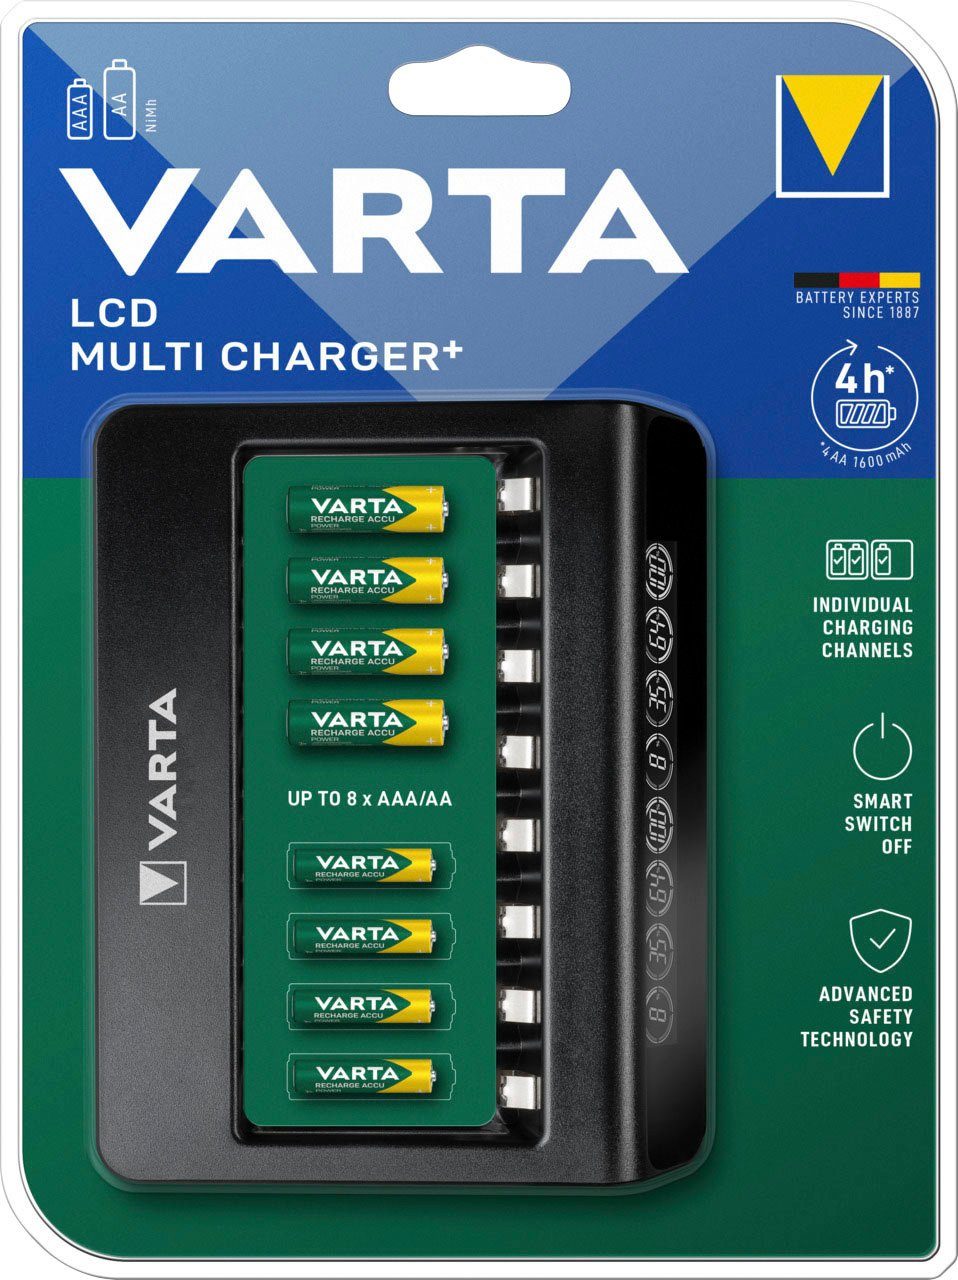 VARTA VARTA LCD Multi Charger+ für 8 AA/AAA Akkus mit Einzelschachtladun  Akku-Ladestation, Lieferumfang: VARTA LCD Multi Charger+ mit Netzteil